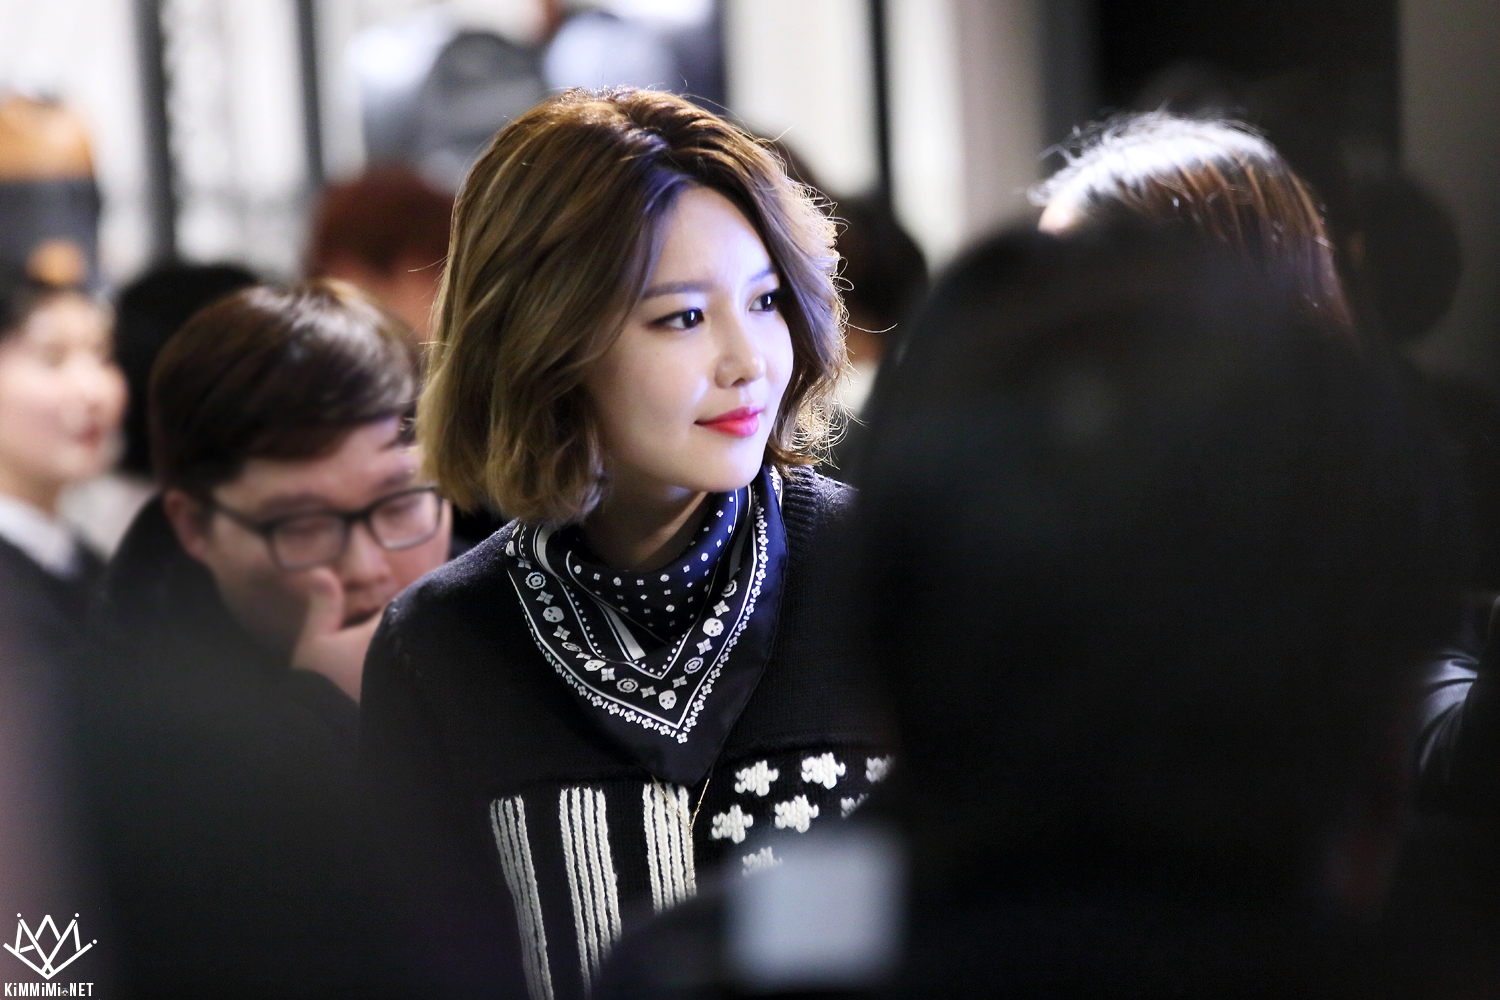  [PIC][27-11-2015]SooYoung tham dự buổi Fansign cho thương hiệu "COACH" tại Lotte Department Store Busan vào trưa nay - Page 2 26089D3E56BB2530355E31